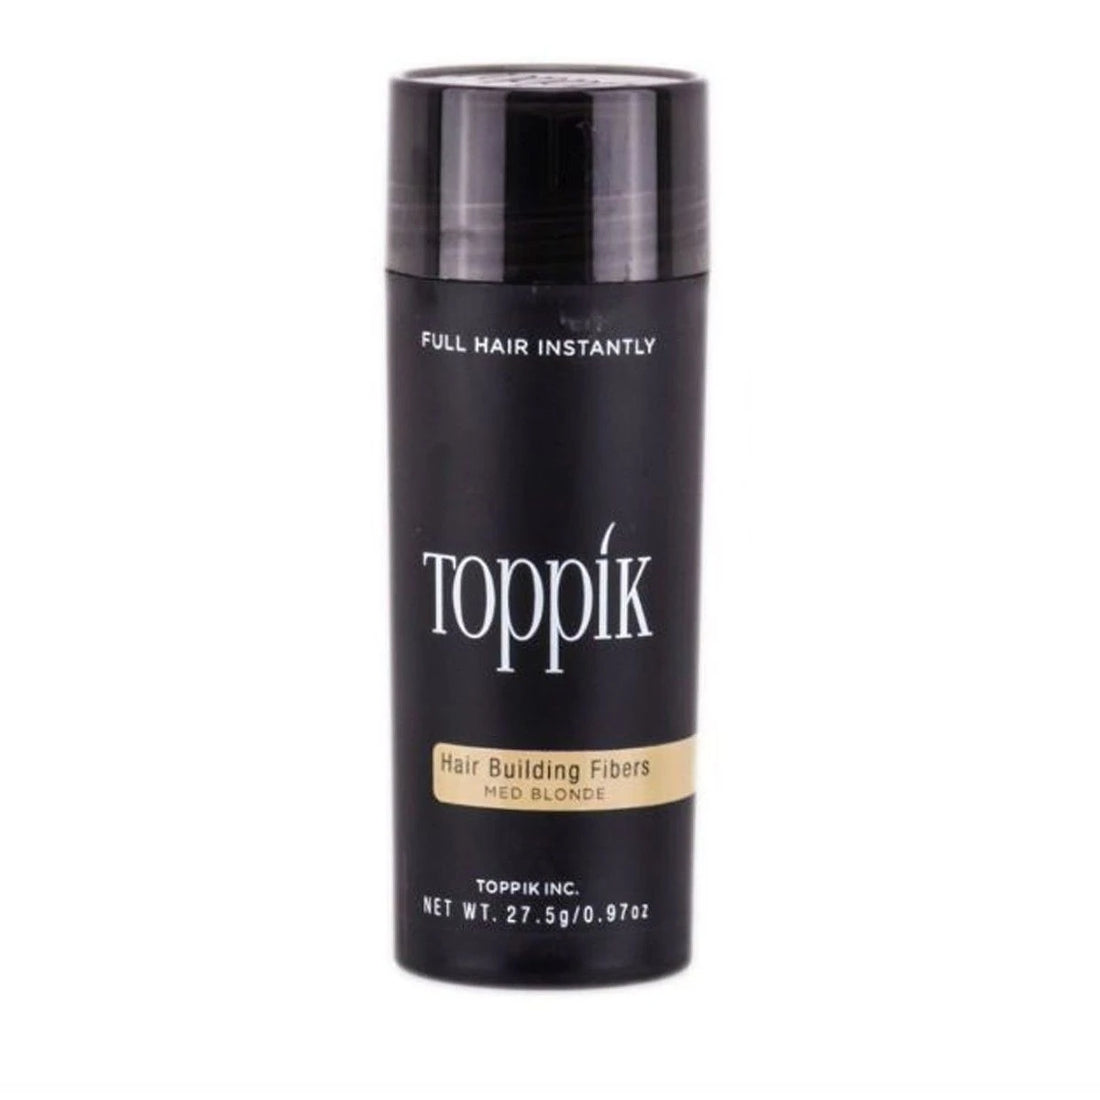 Toppik Волокна для наращивания волос эконом-класса, средний блондин, 27,5 г